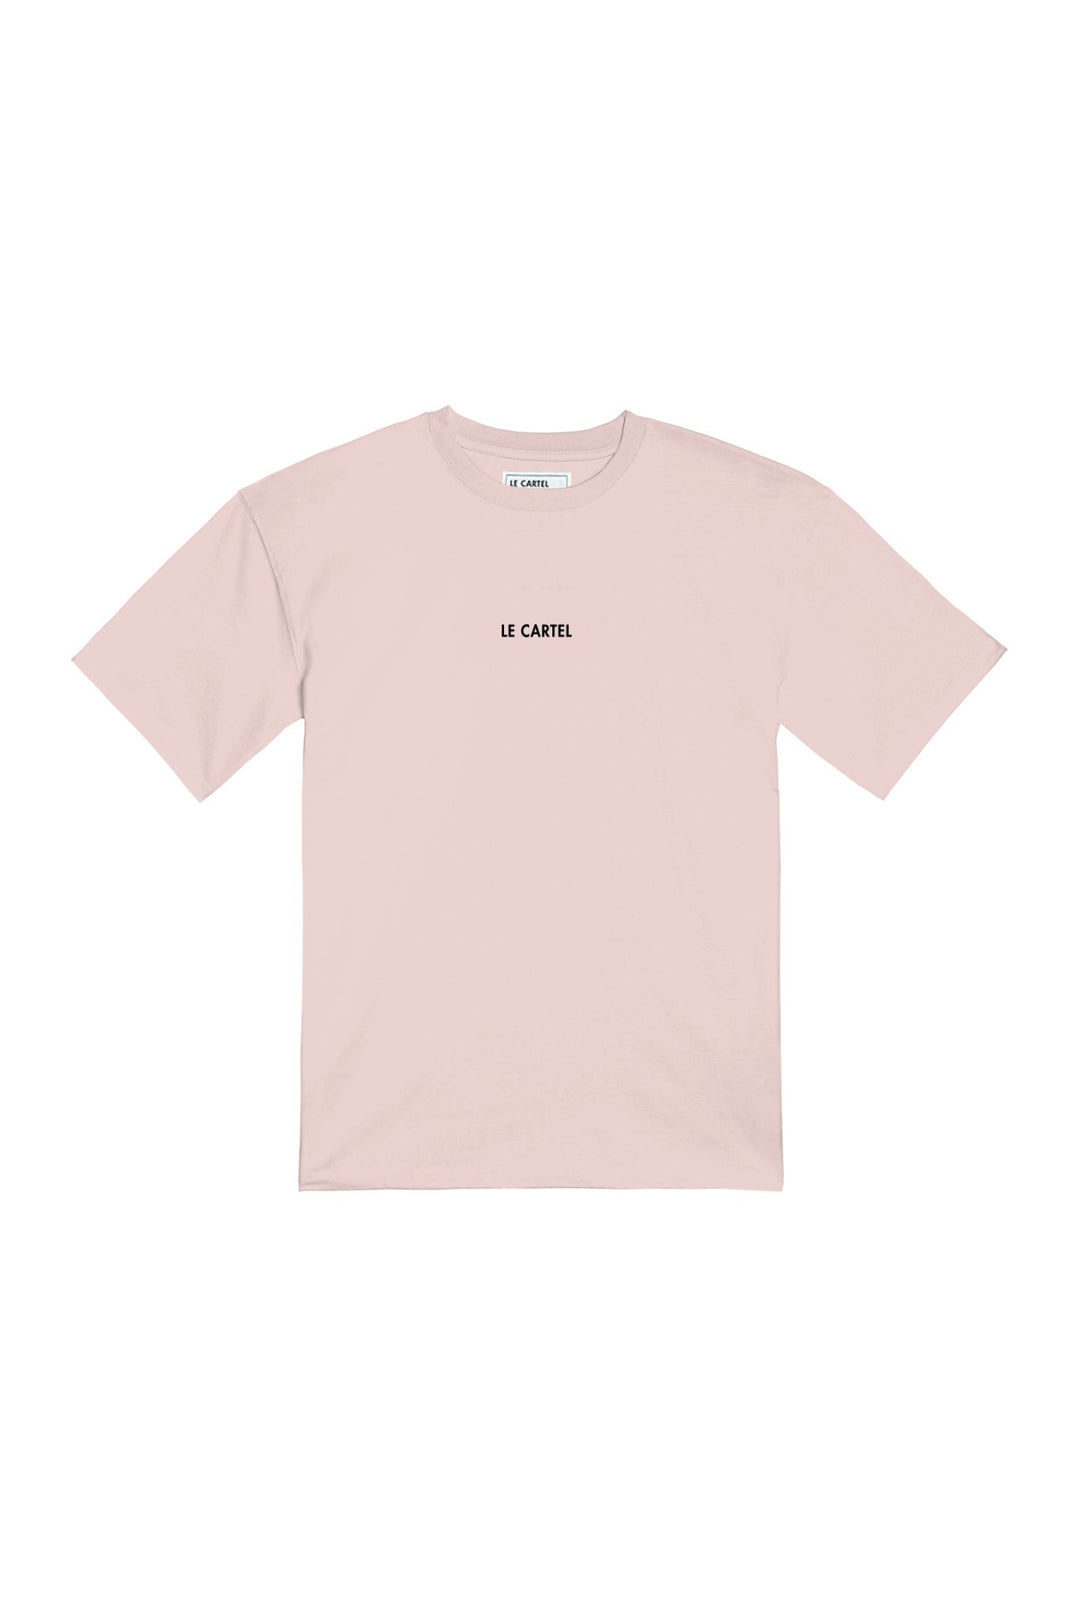 FRENCH PANPAN・T-shirt unisexe・Rose poudré - Le Cartel